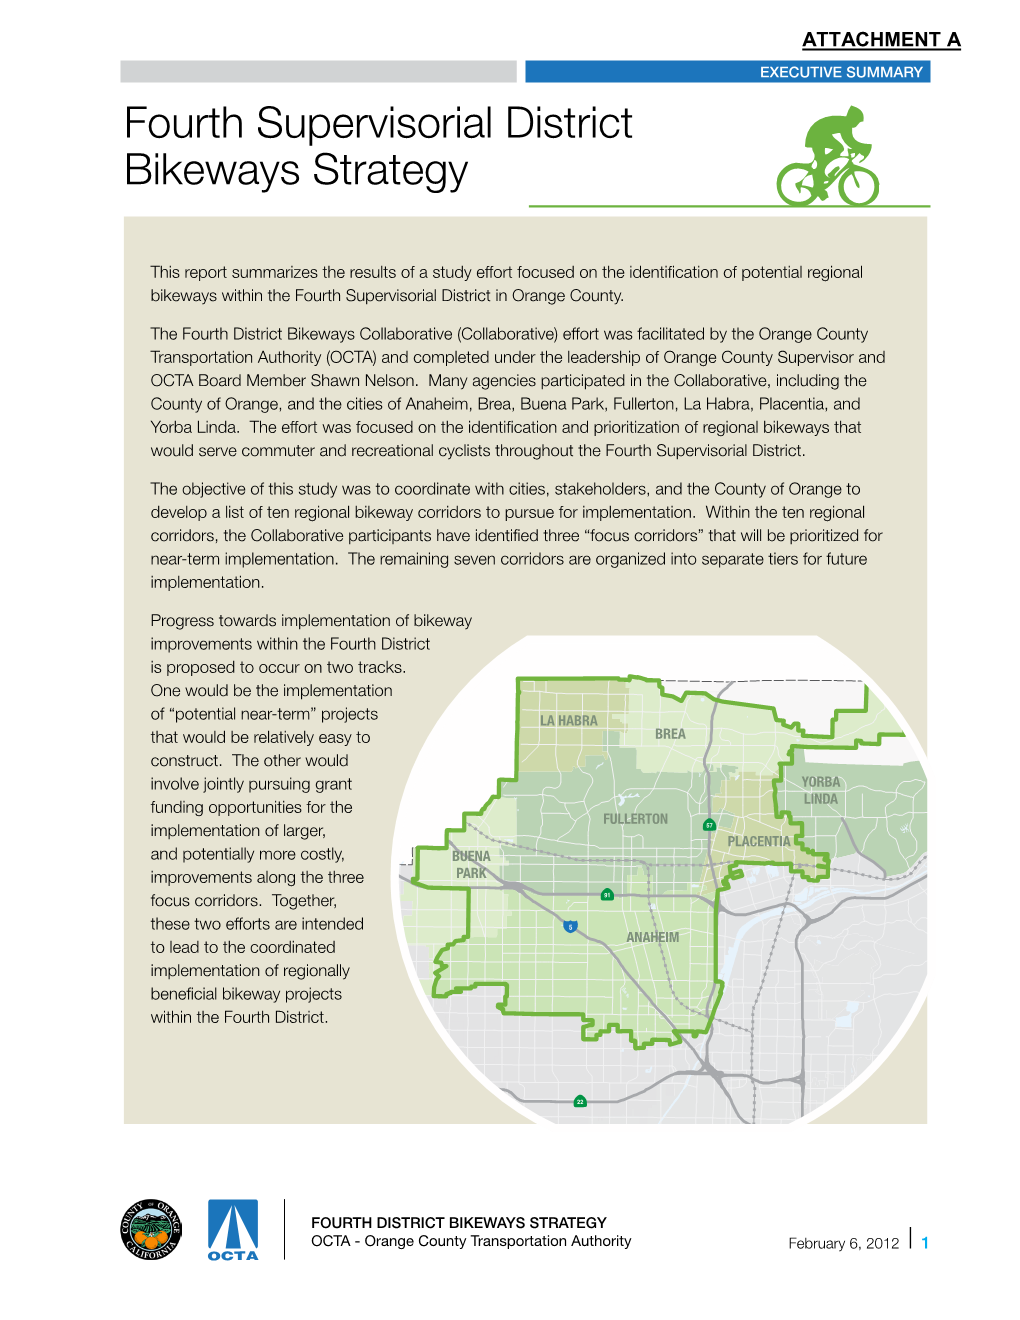 Fourth Supervisorial District Bikeways Strategy